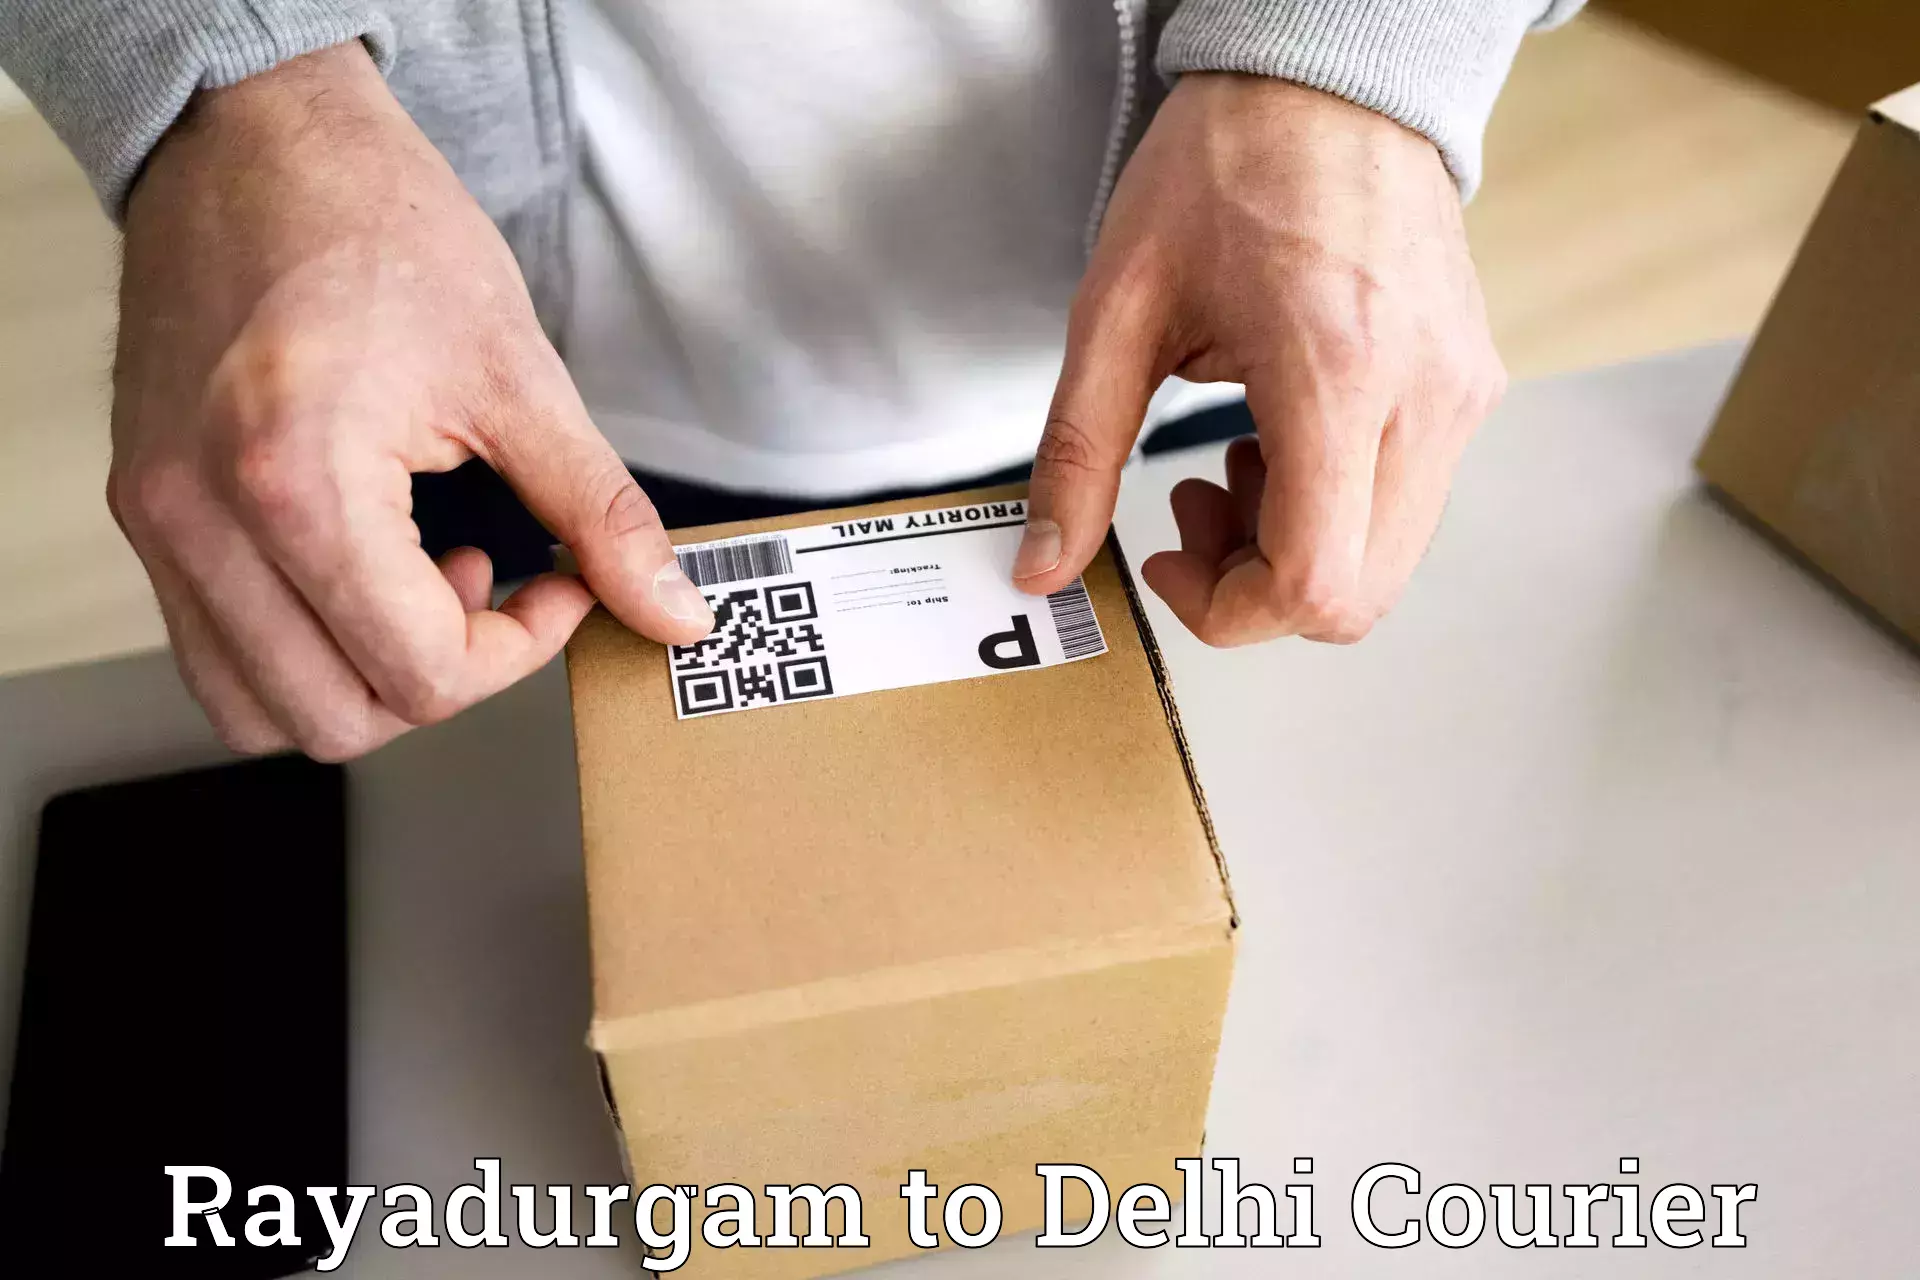 Efficient order fulfillment Rayadurgam to Delhi